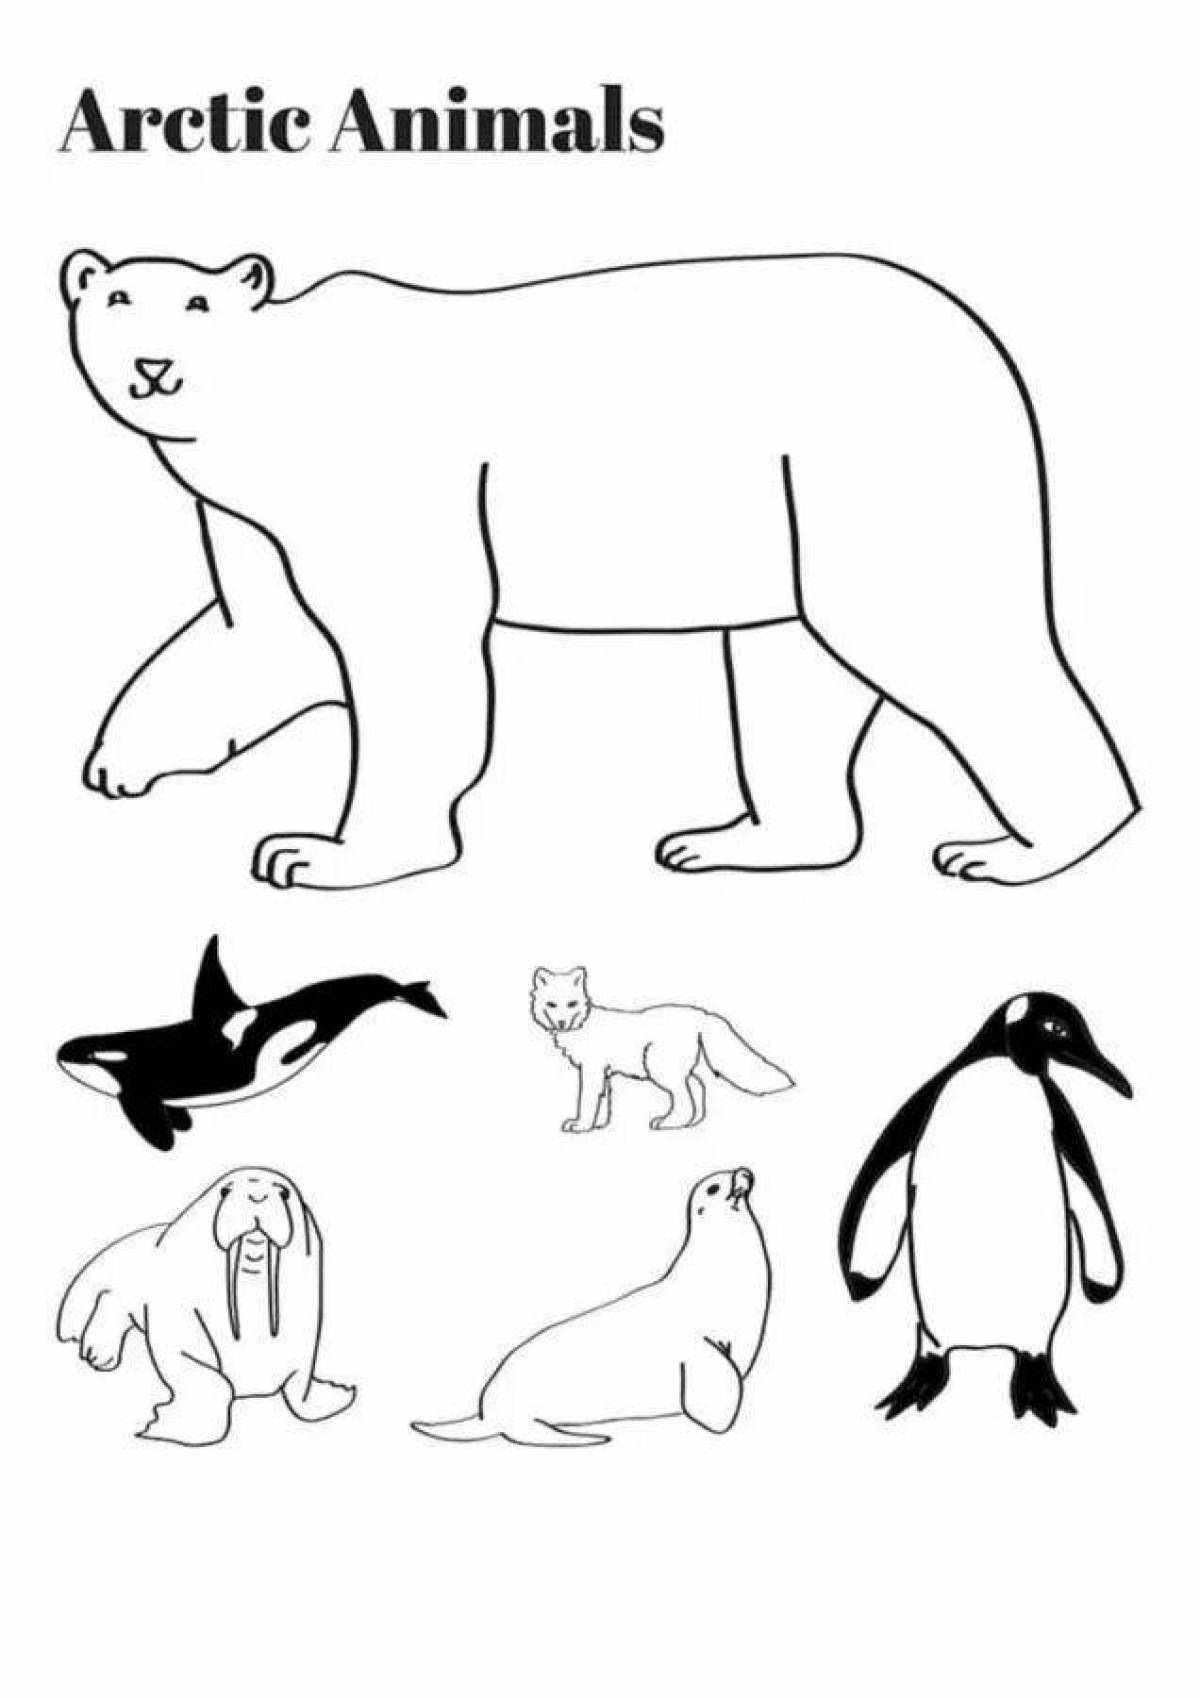 Adorable Antarctic emperor penguin coloring page